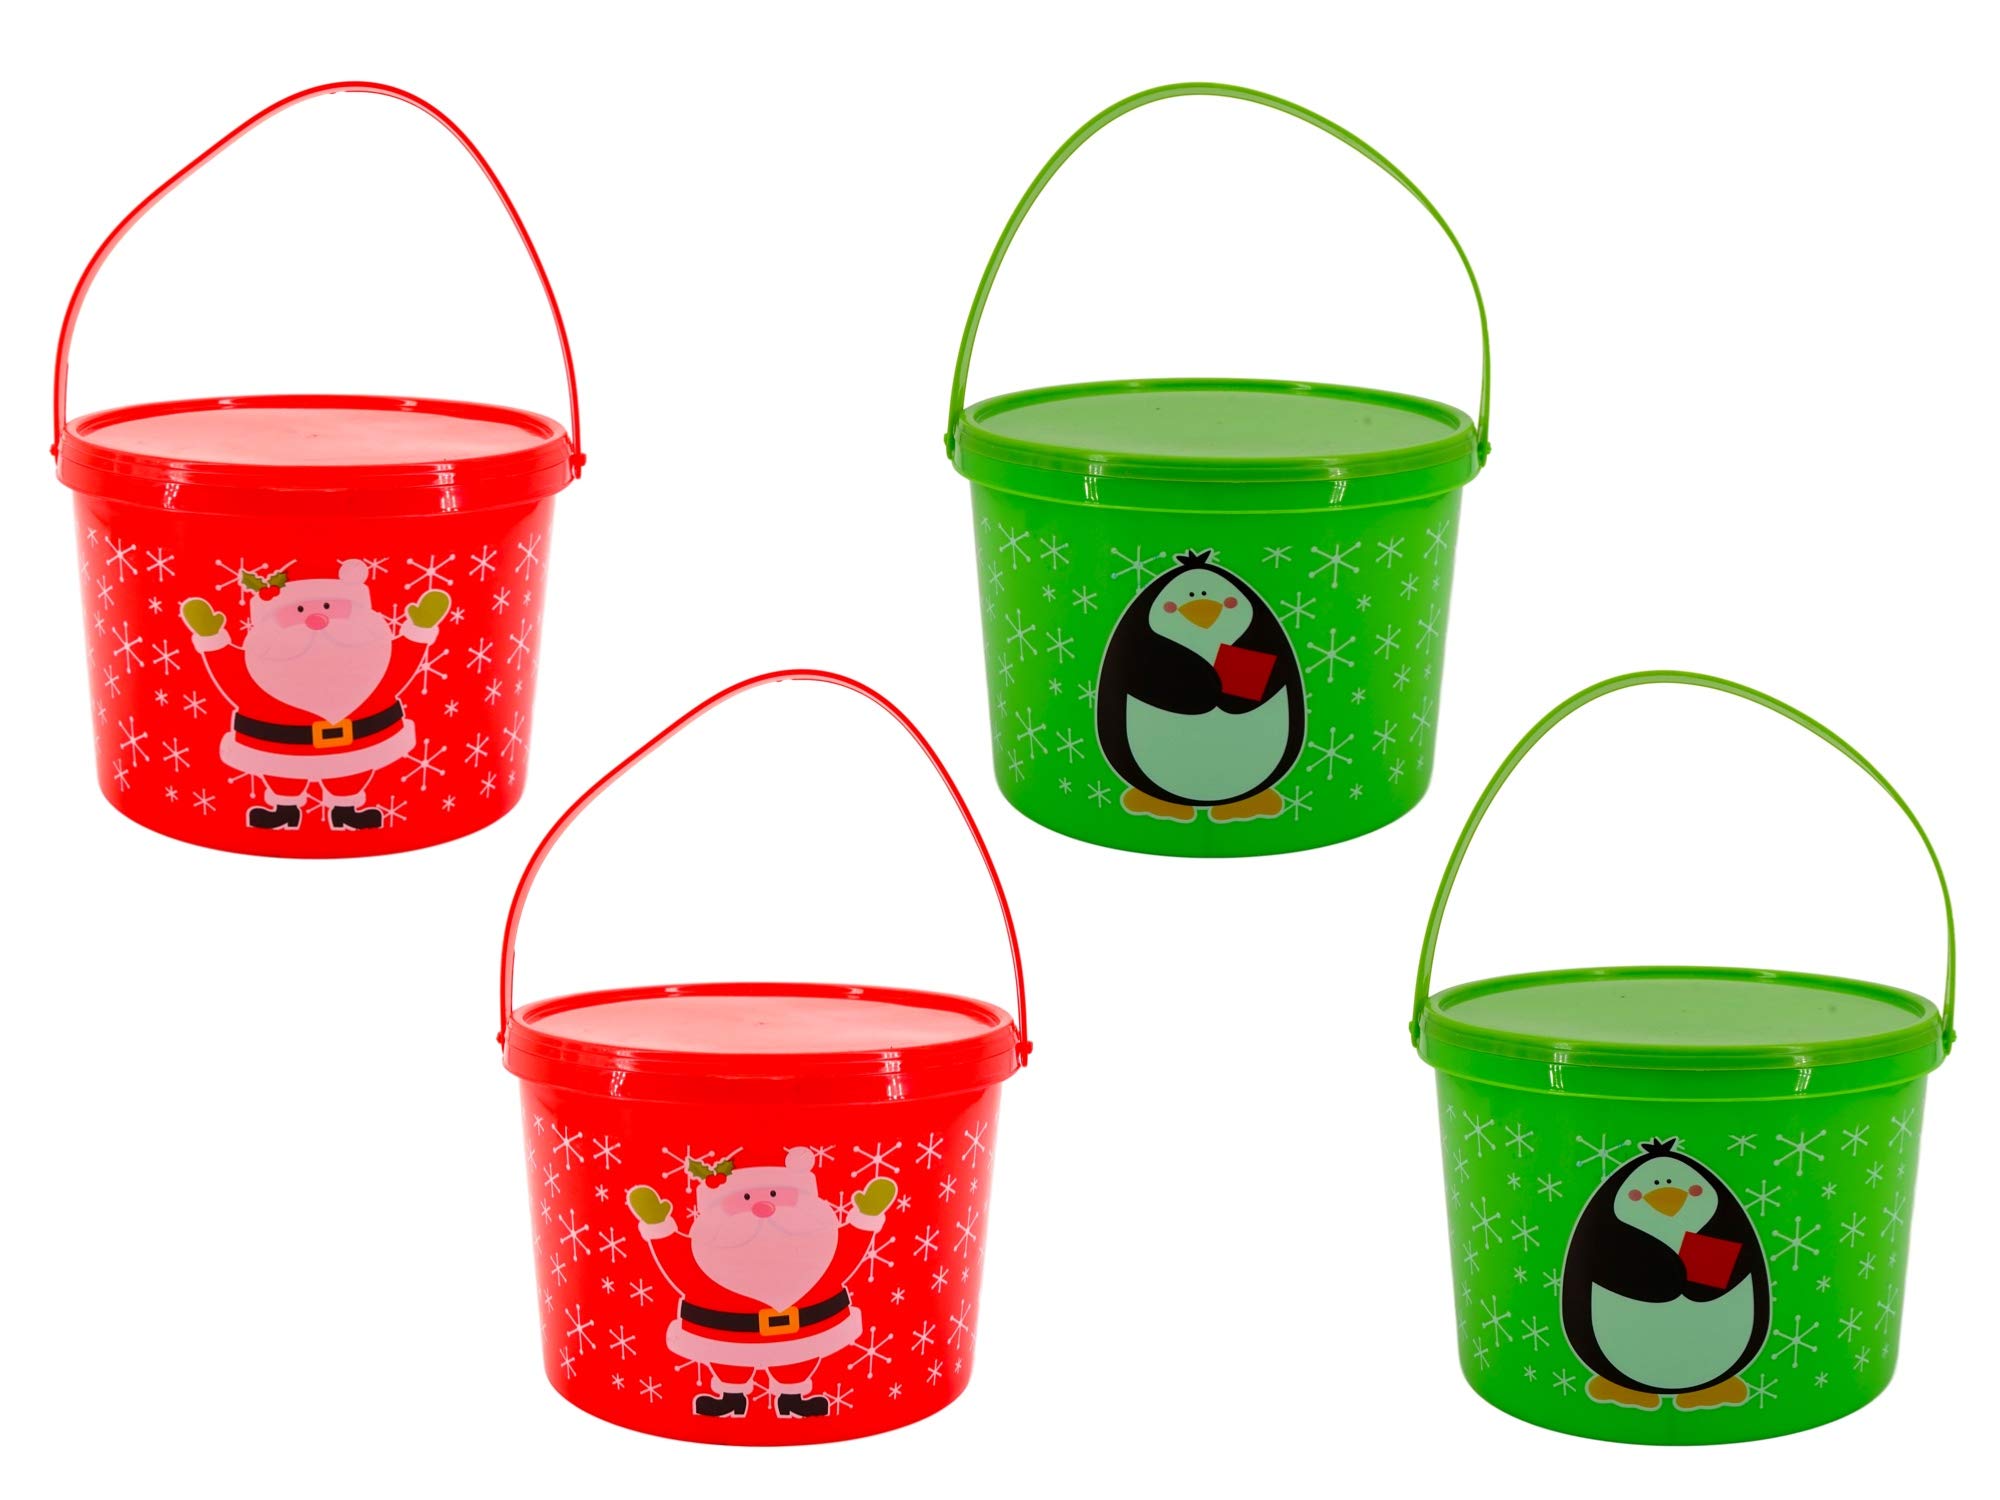 mini plastic buckets